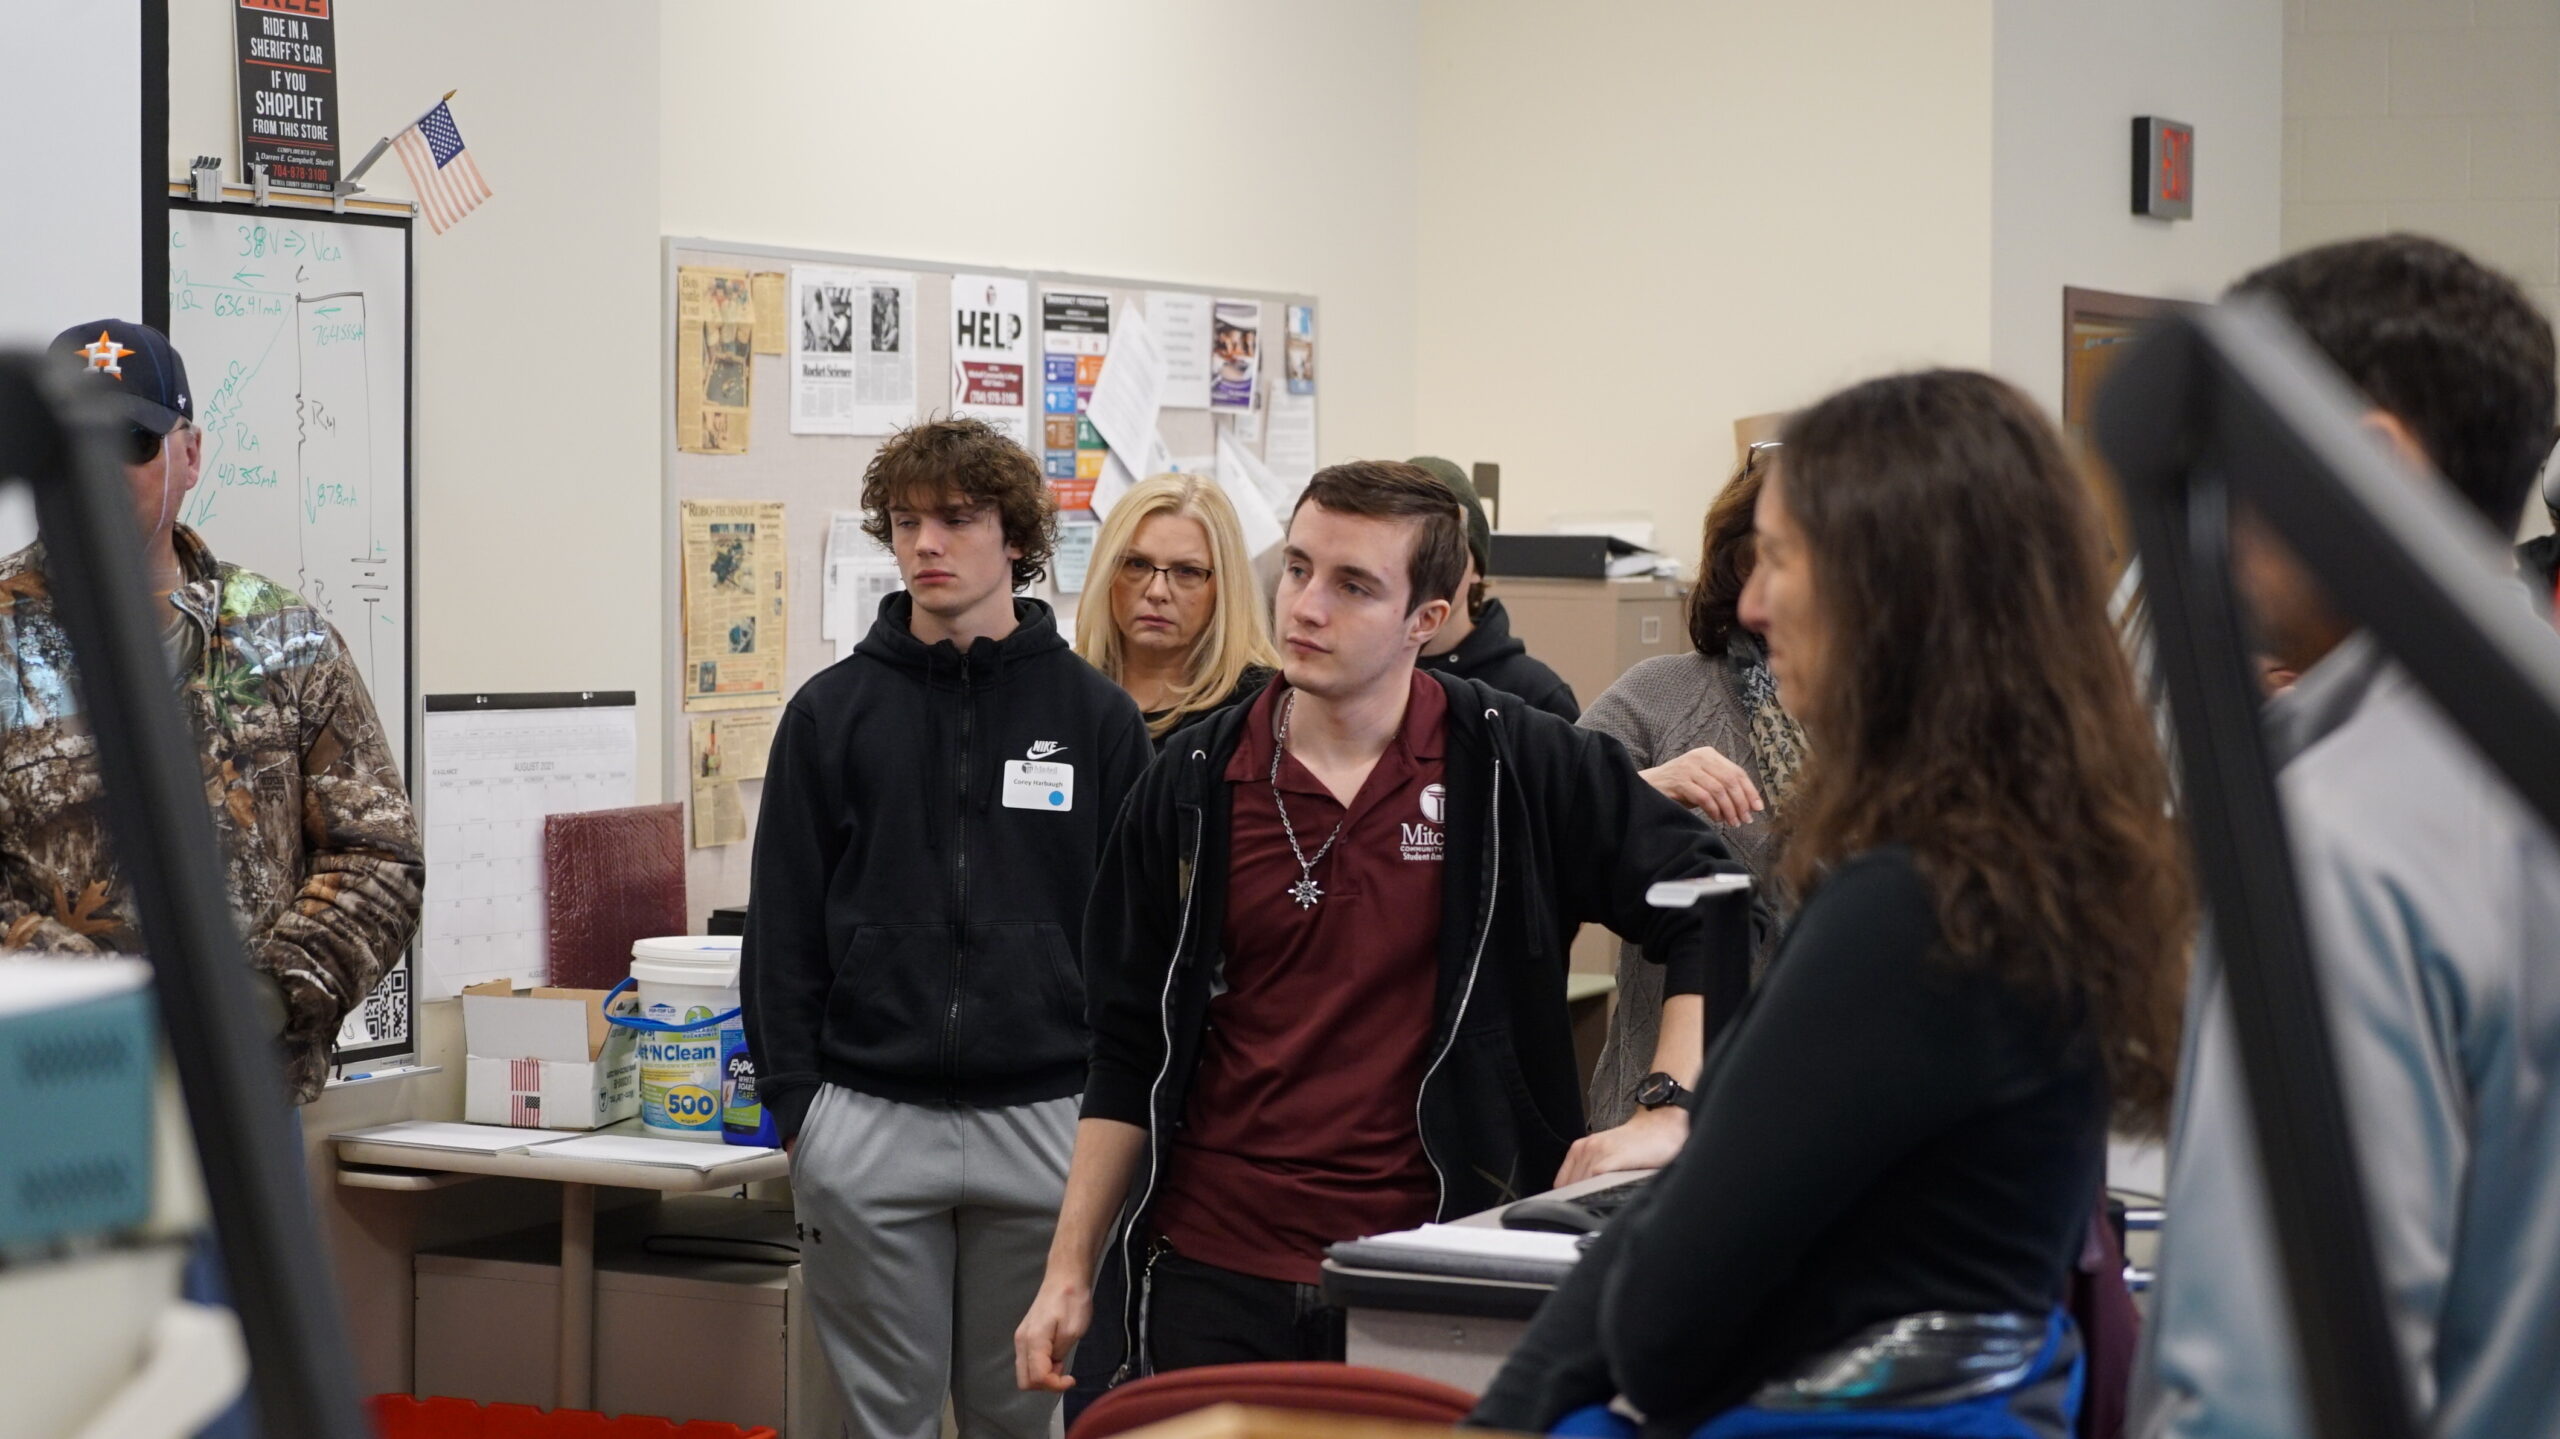 Майбутні студенти Мітчелла слухають презентацію під час екскурсії по кампусу.